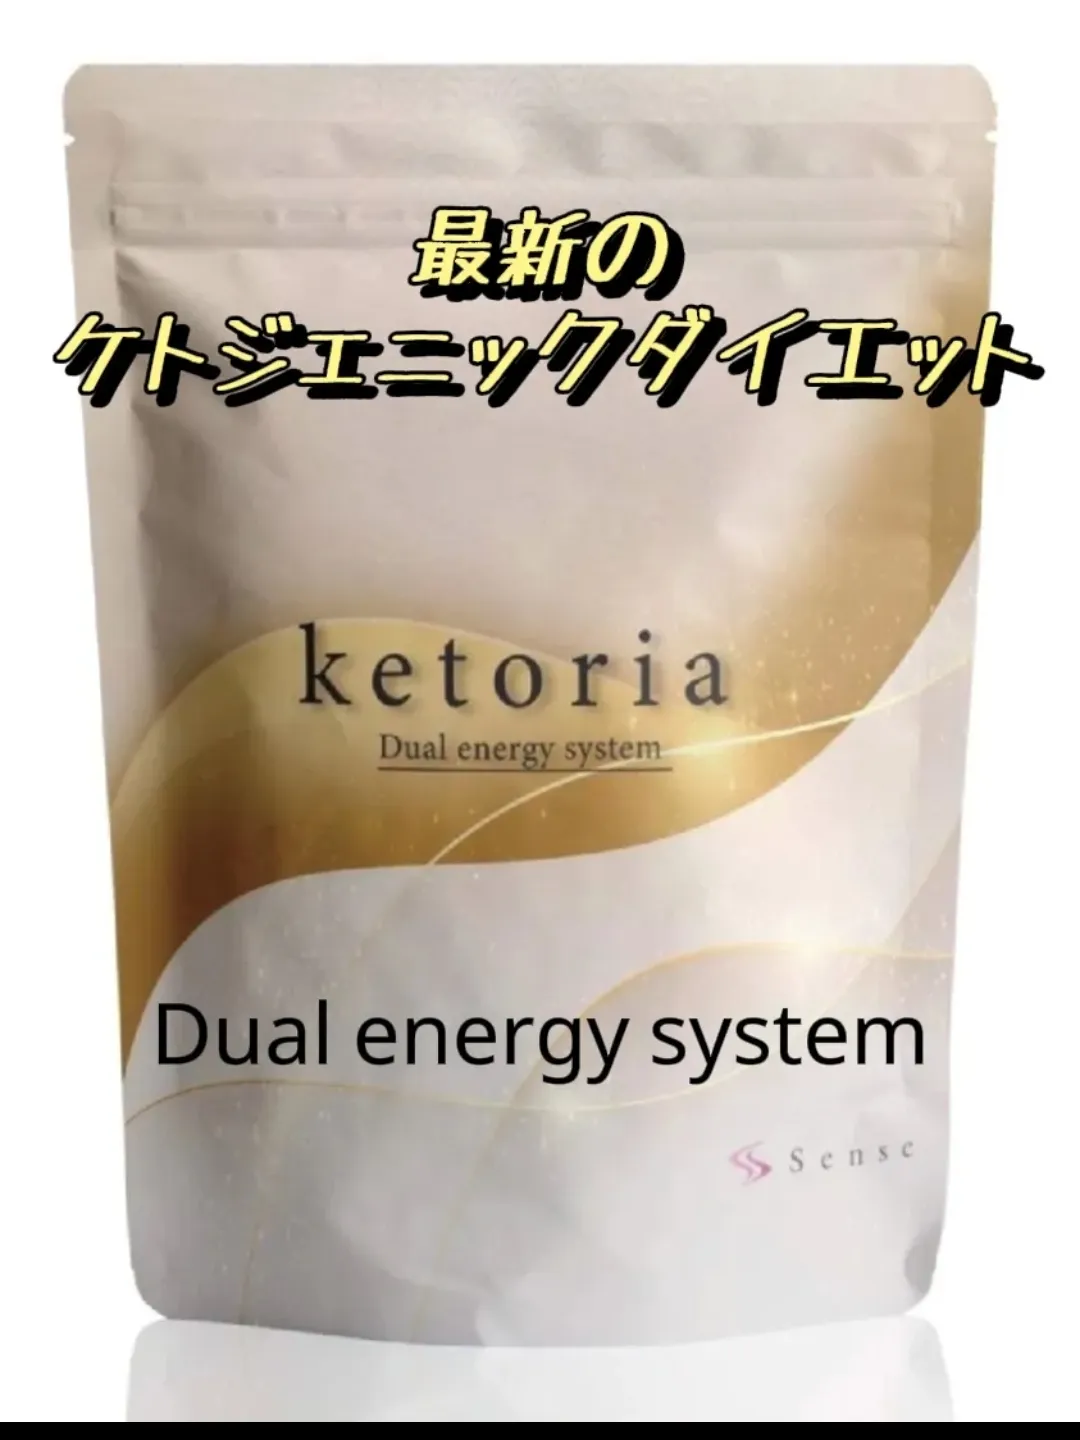 センス ケトリア グレープフルーツ sense ketoria 2袋16200円✖2 - 菓子